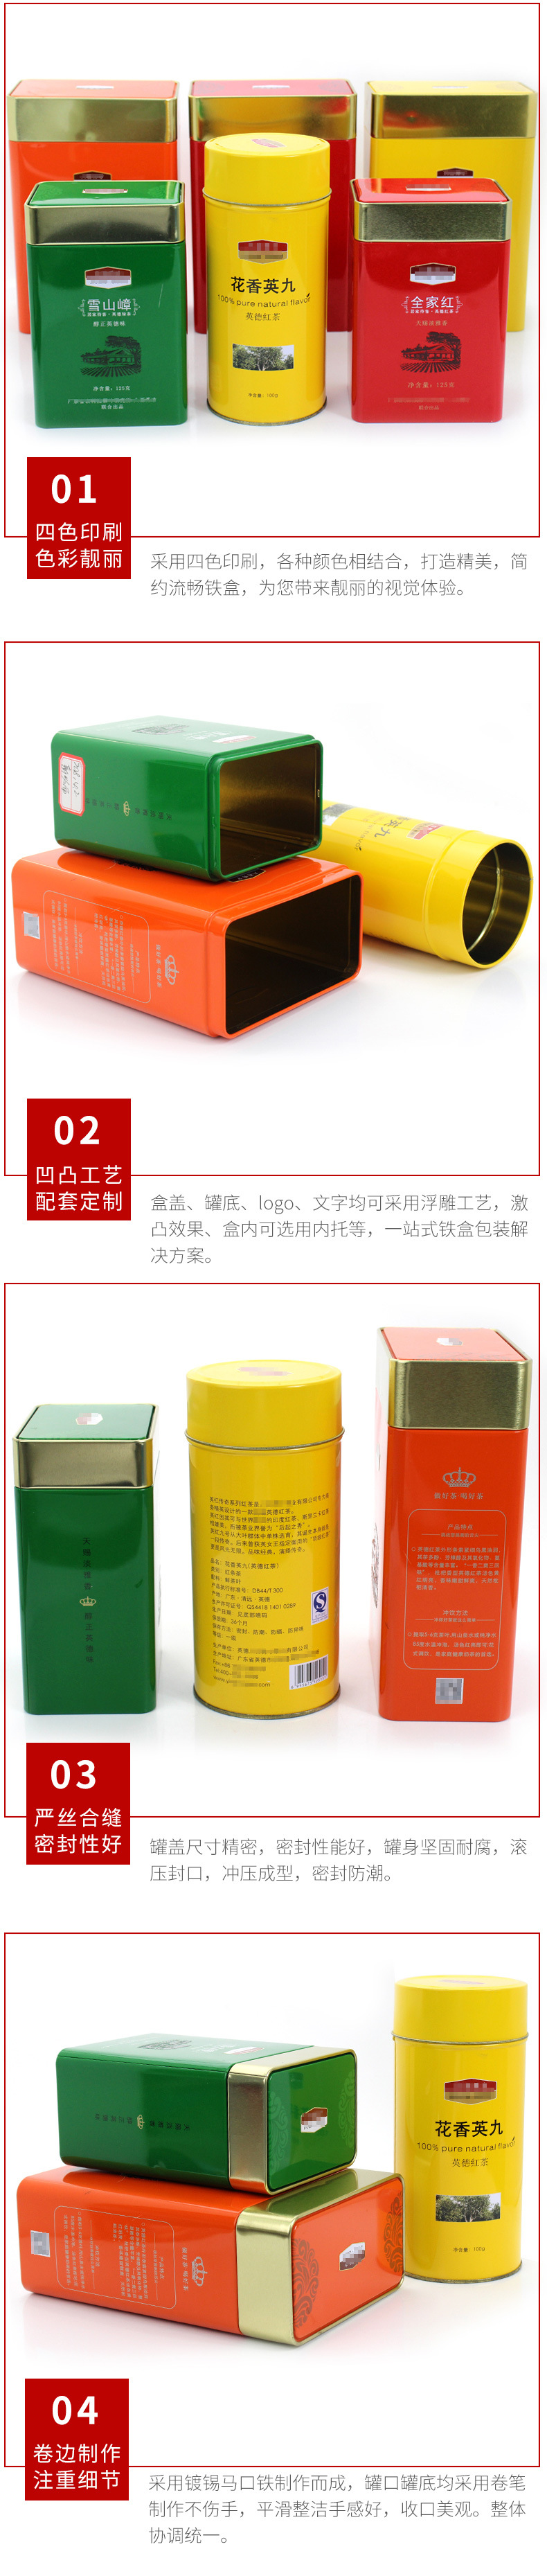 定制圆形马口铁茶叶罐铁盒通用 免费拿样 马口铁茶叶罐生产厂家示例图12